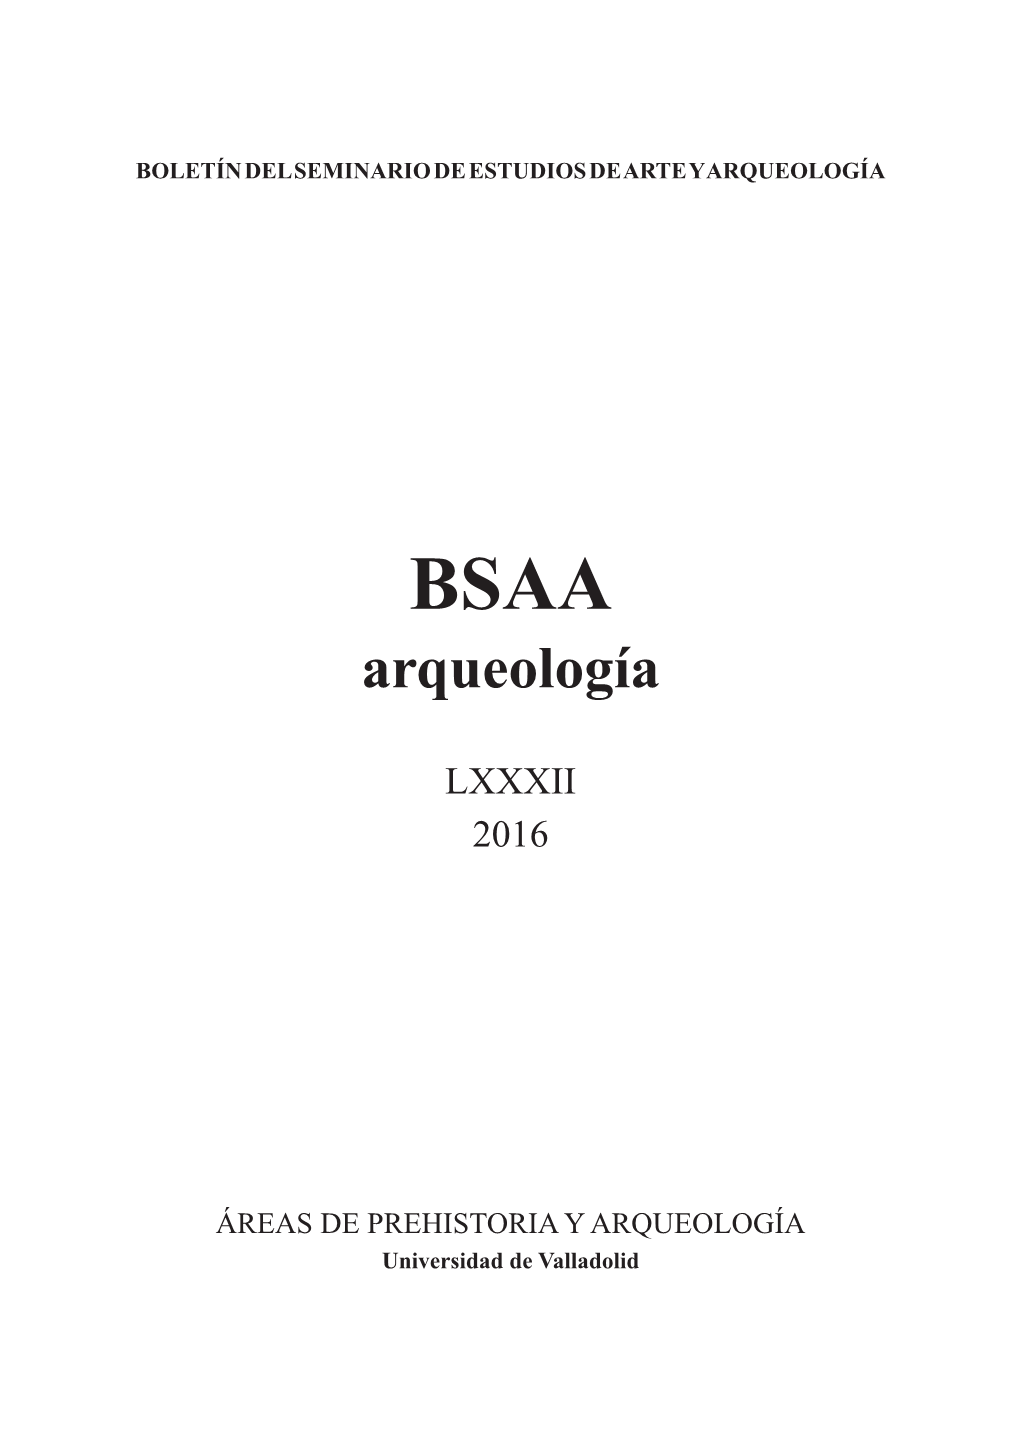 BSAA Arqueología